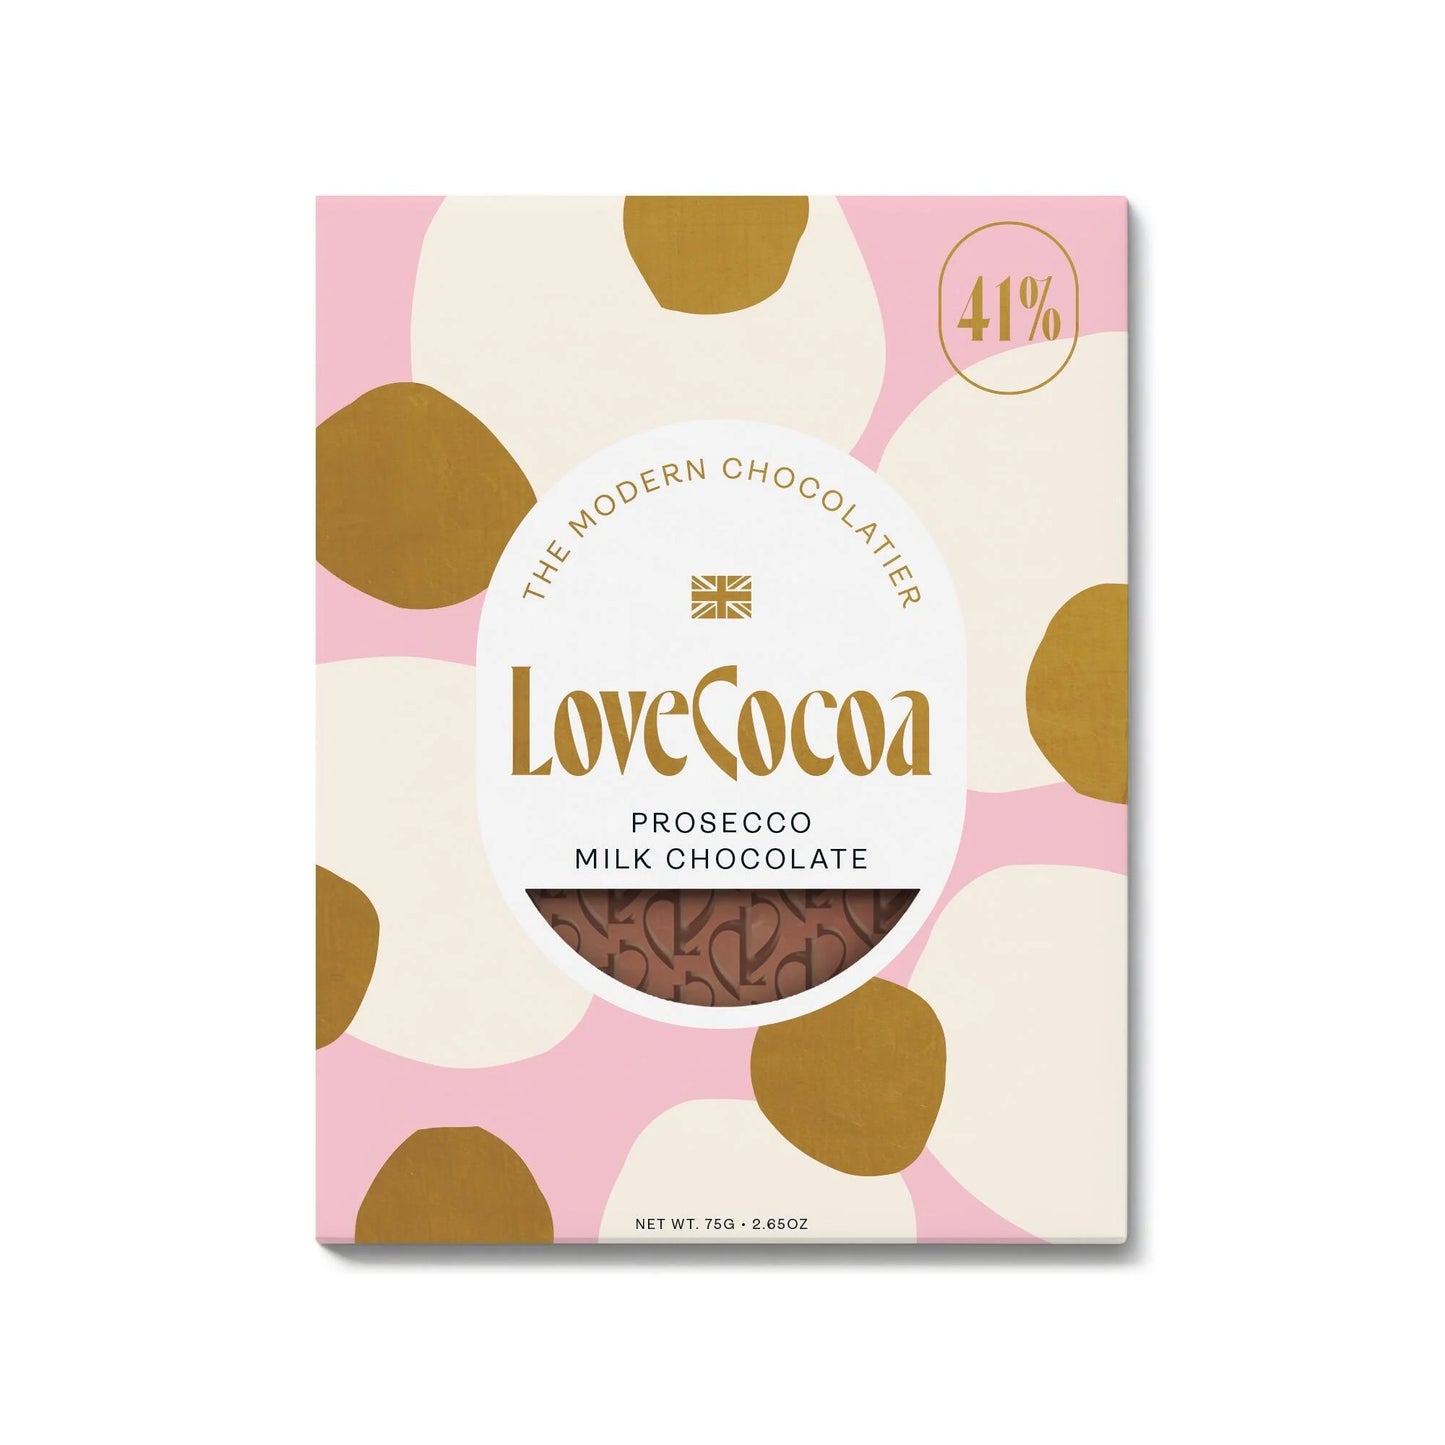 Love Cocoa prosecco flavoured milk chocolate bar.